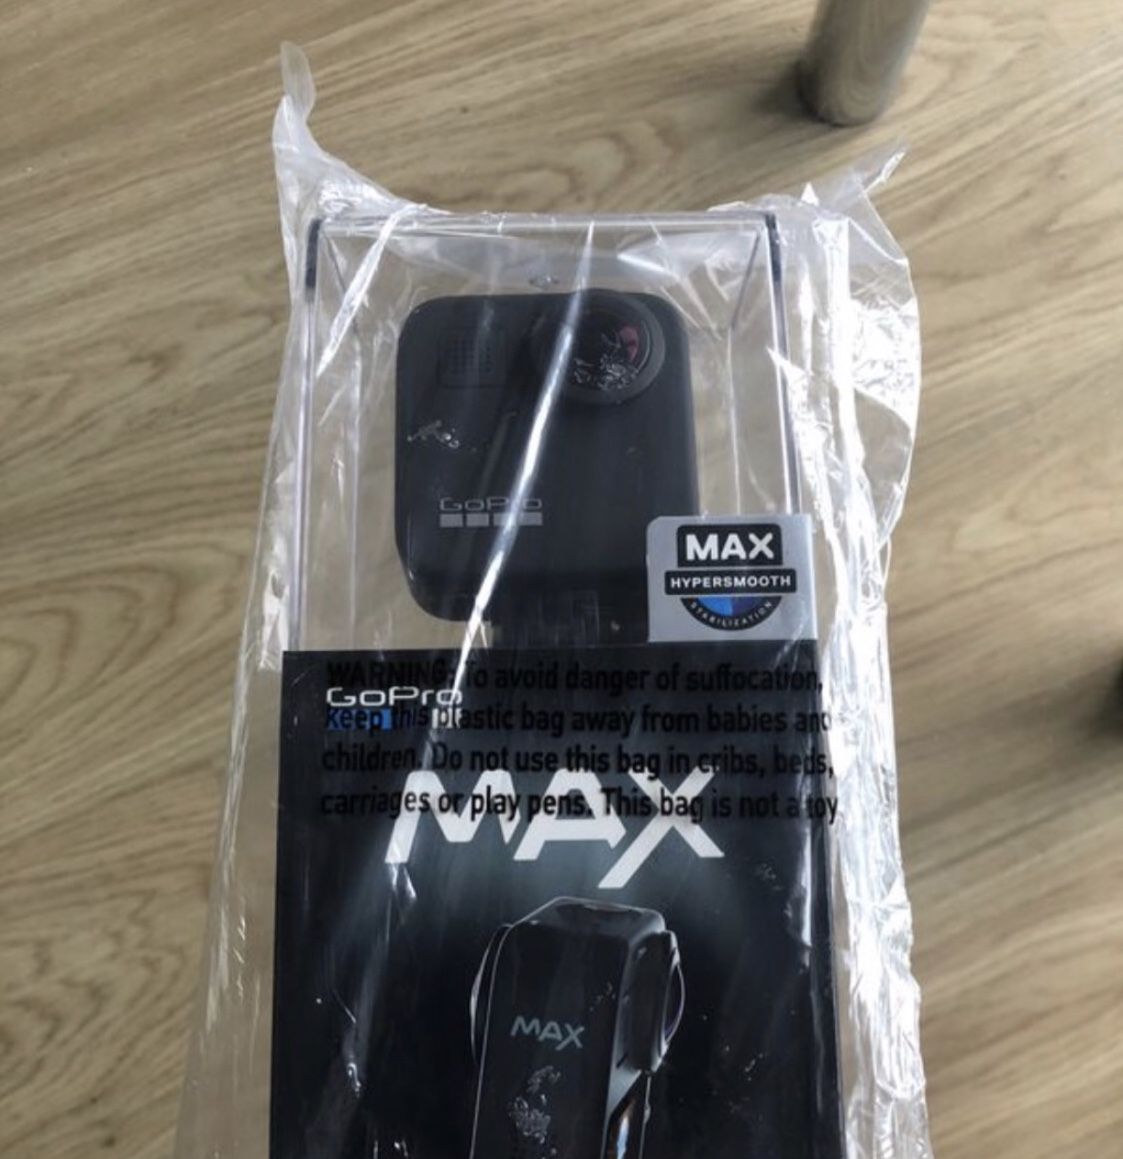 GoPro Max 360 - NEW IN BOX